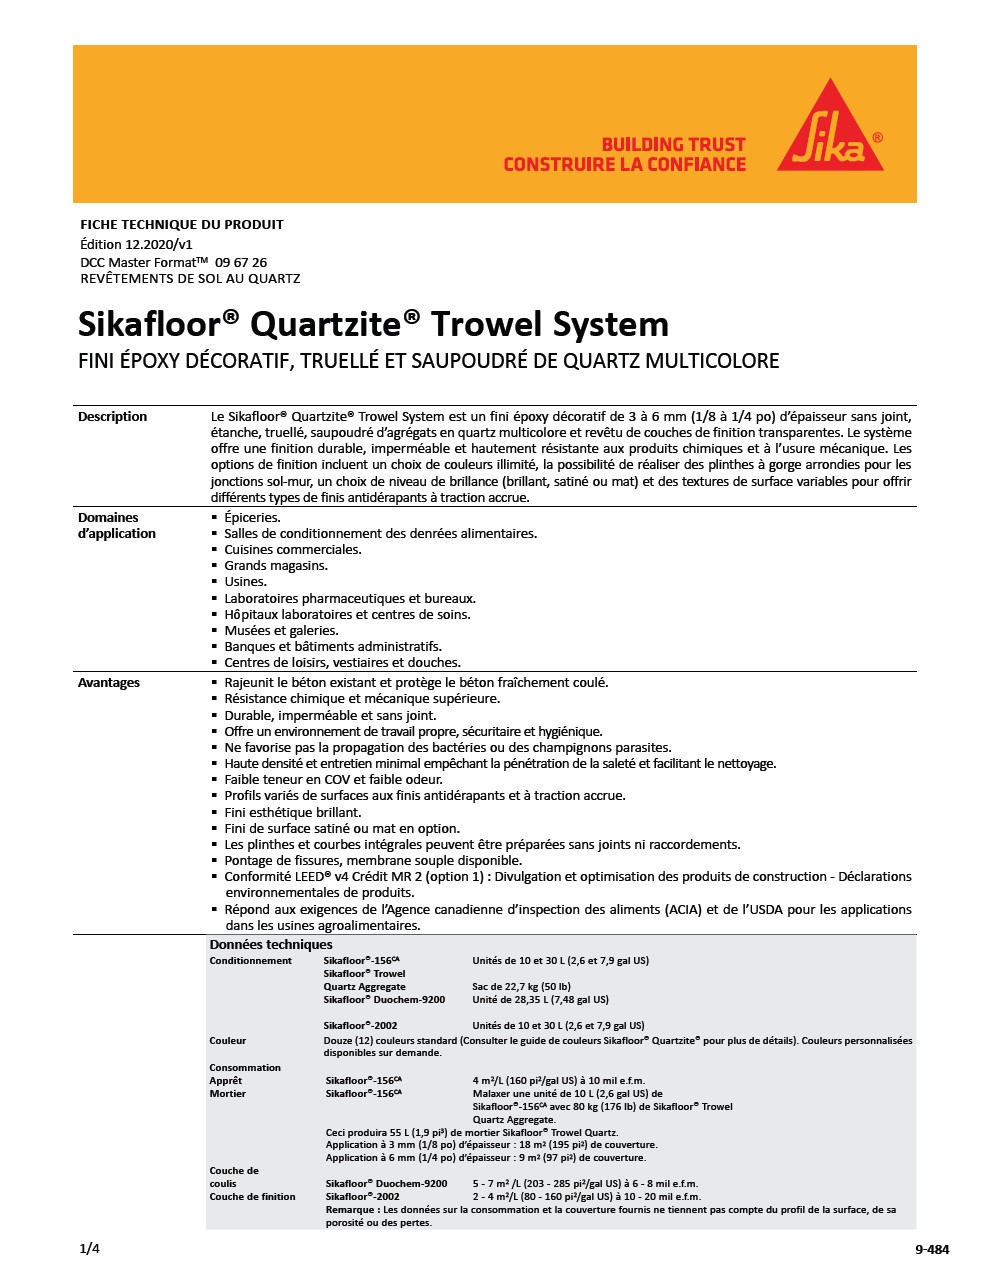 Sikafloor®-Quartzite®-Trowel System